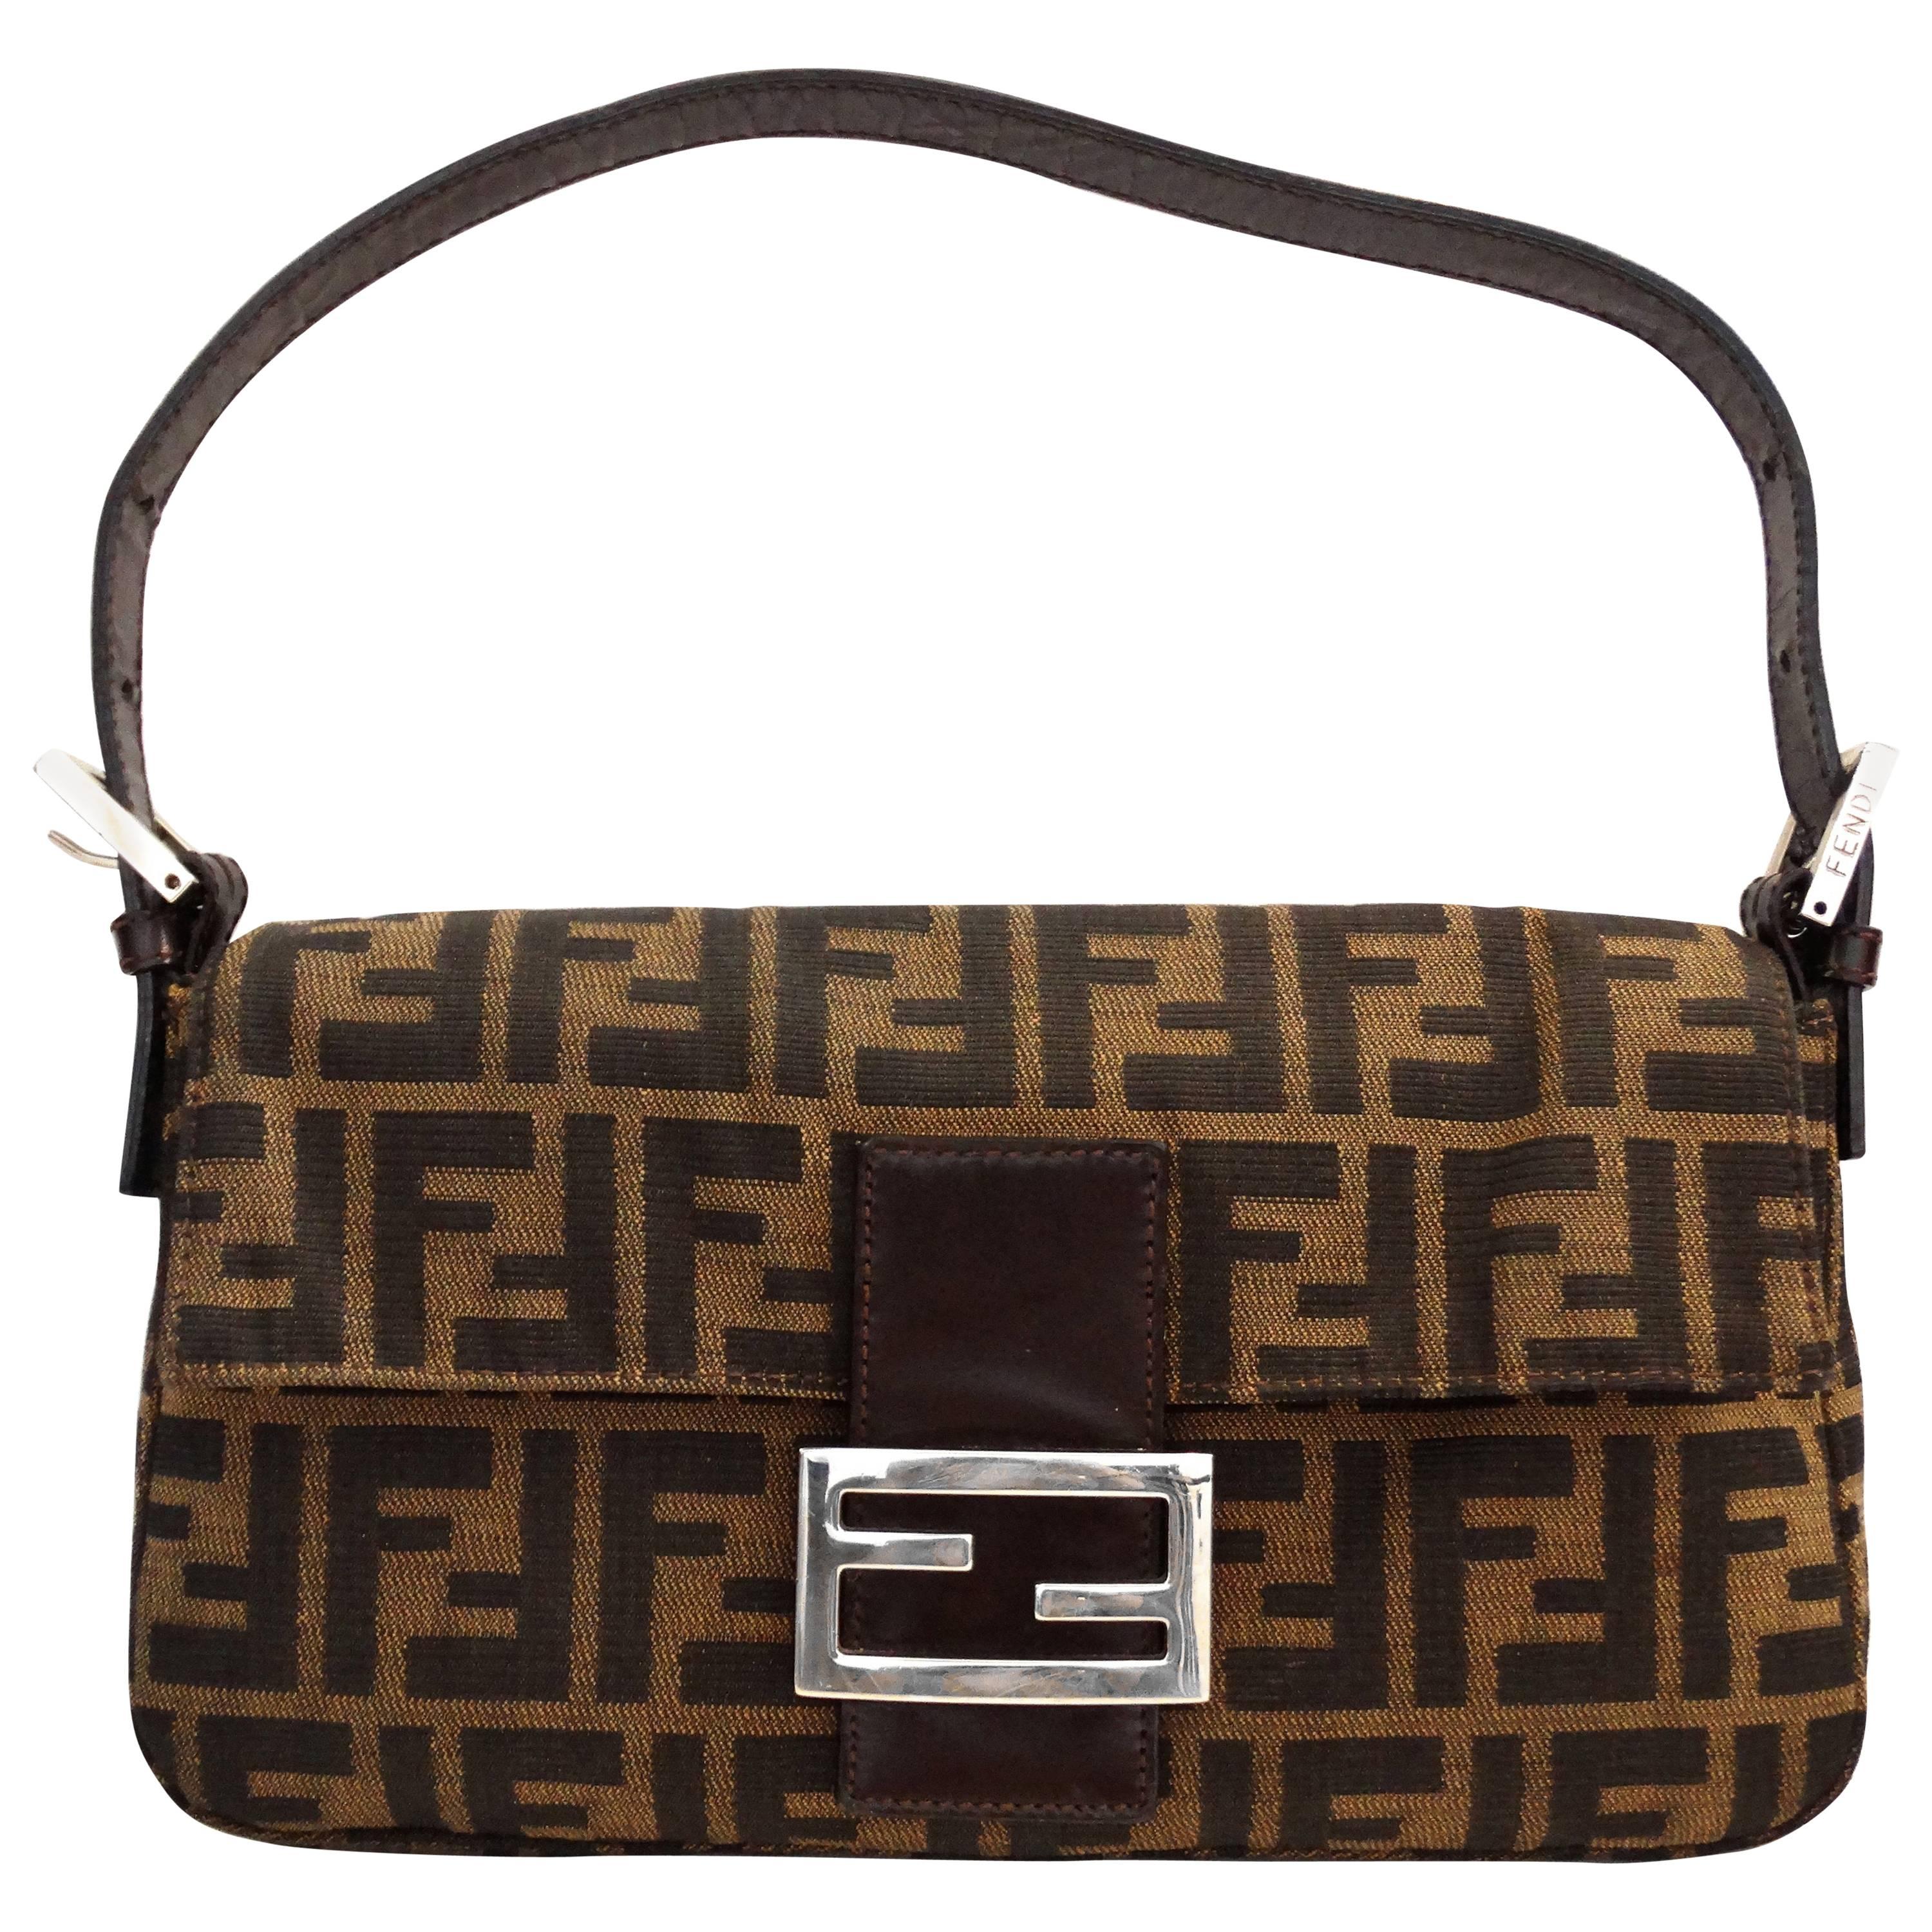 Iconic Fendi Monogram Baguette Shoulder Bag